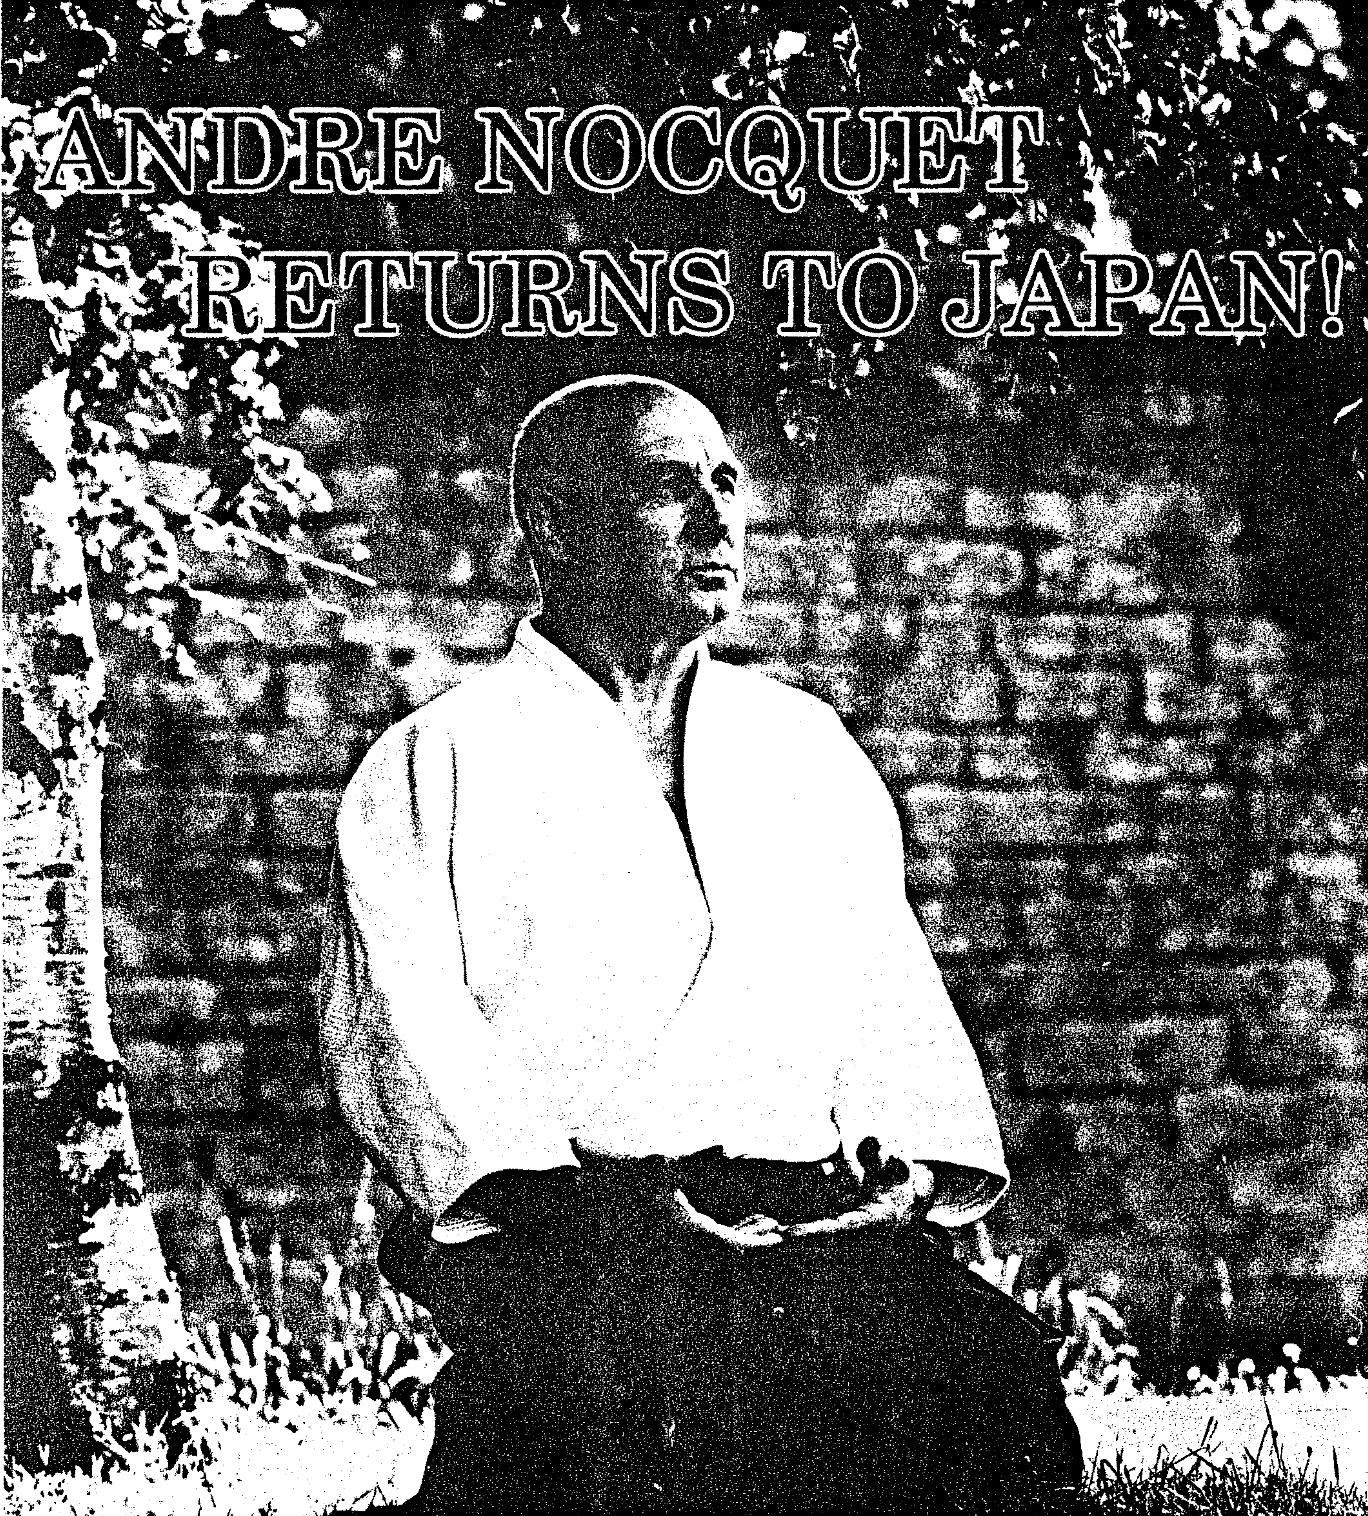 André Nocquet – André Nocquet returns to Japan (1990)